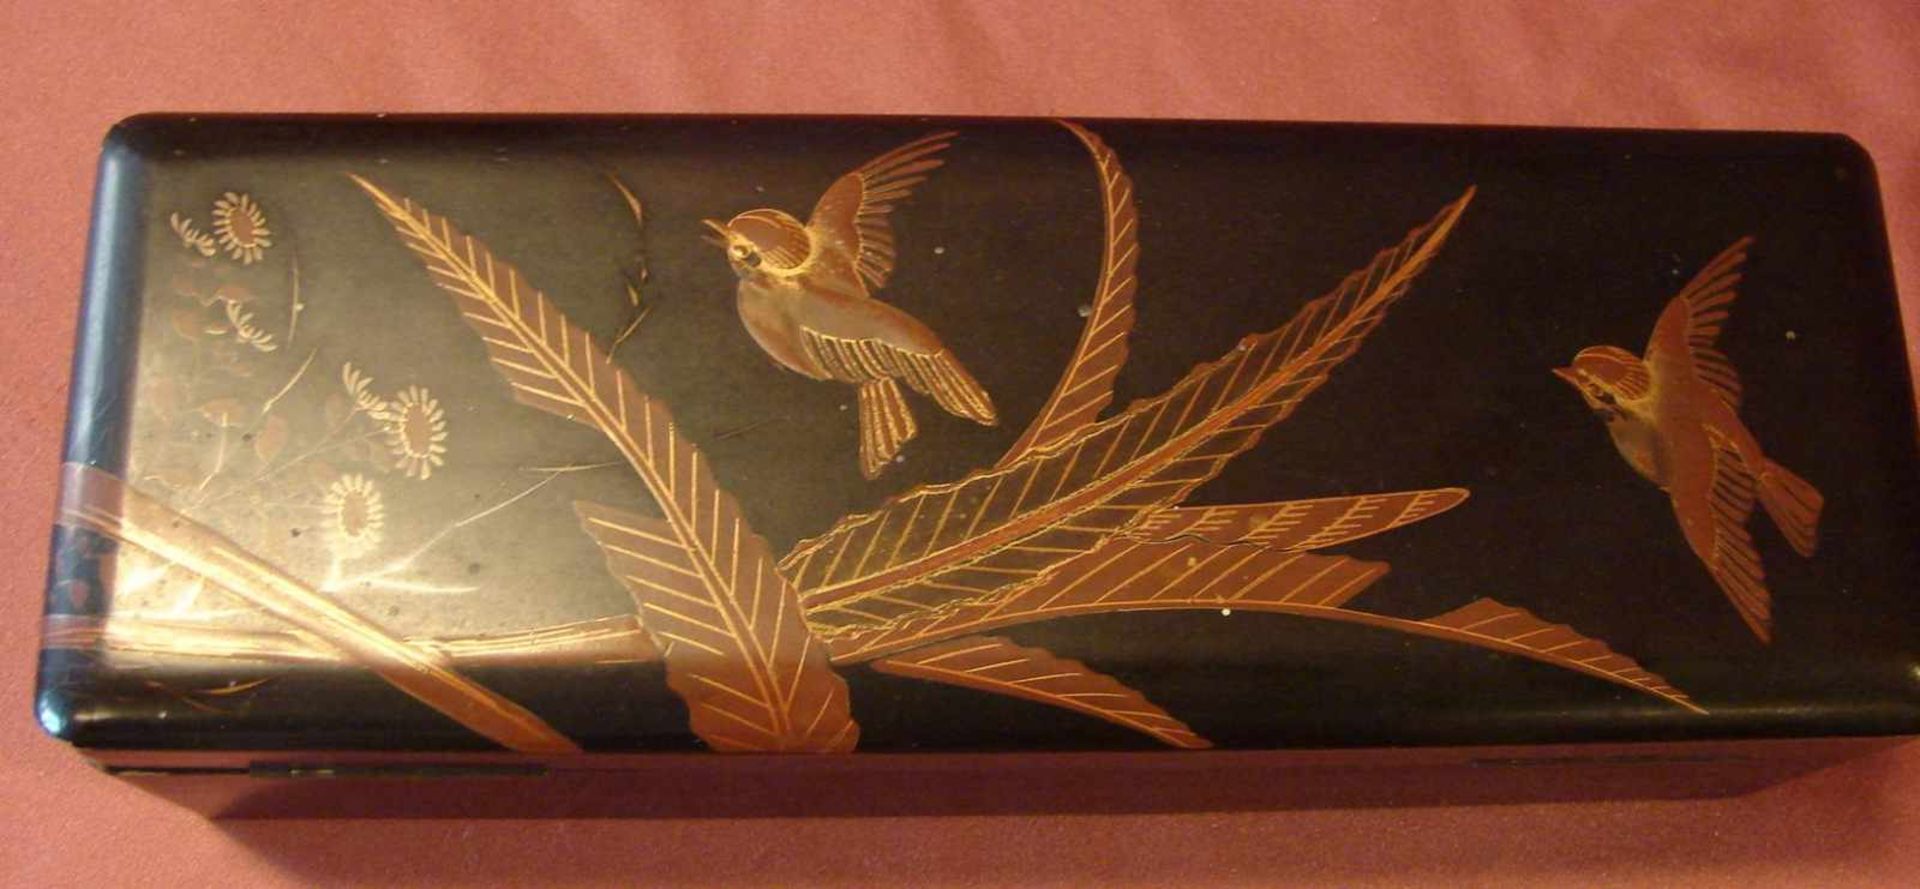 Holzdose, Asien, Vogel-Pflanzenmotiv, H. ca. 8, B. 30, T. 11 cm - Bild 2 aus 2